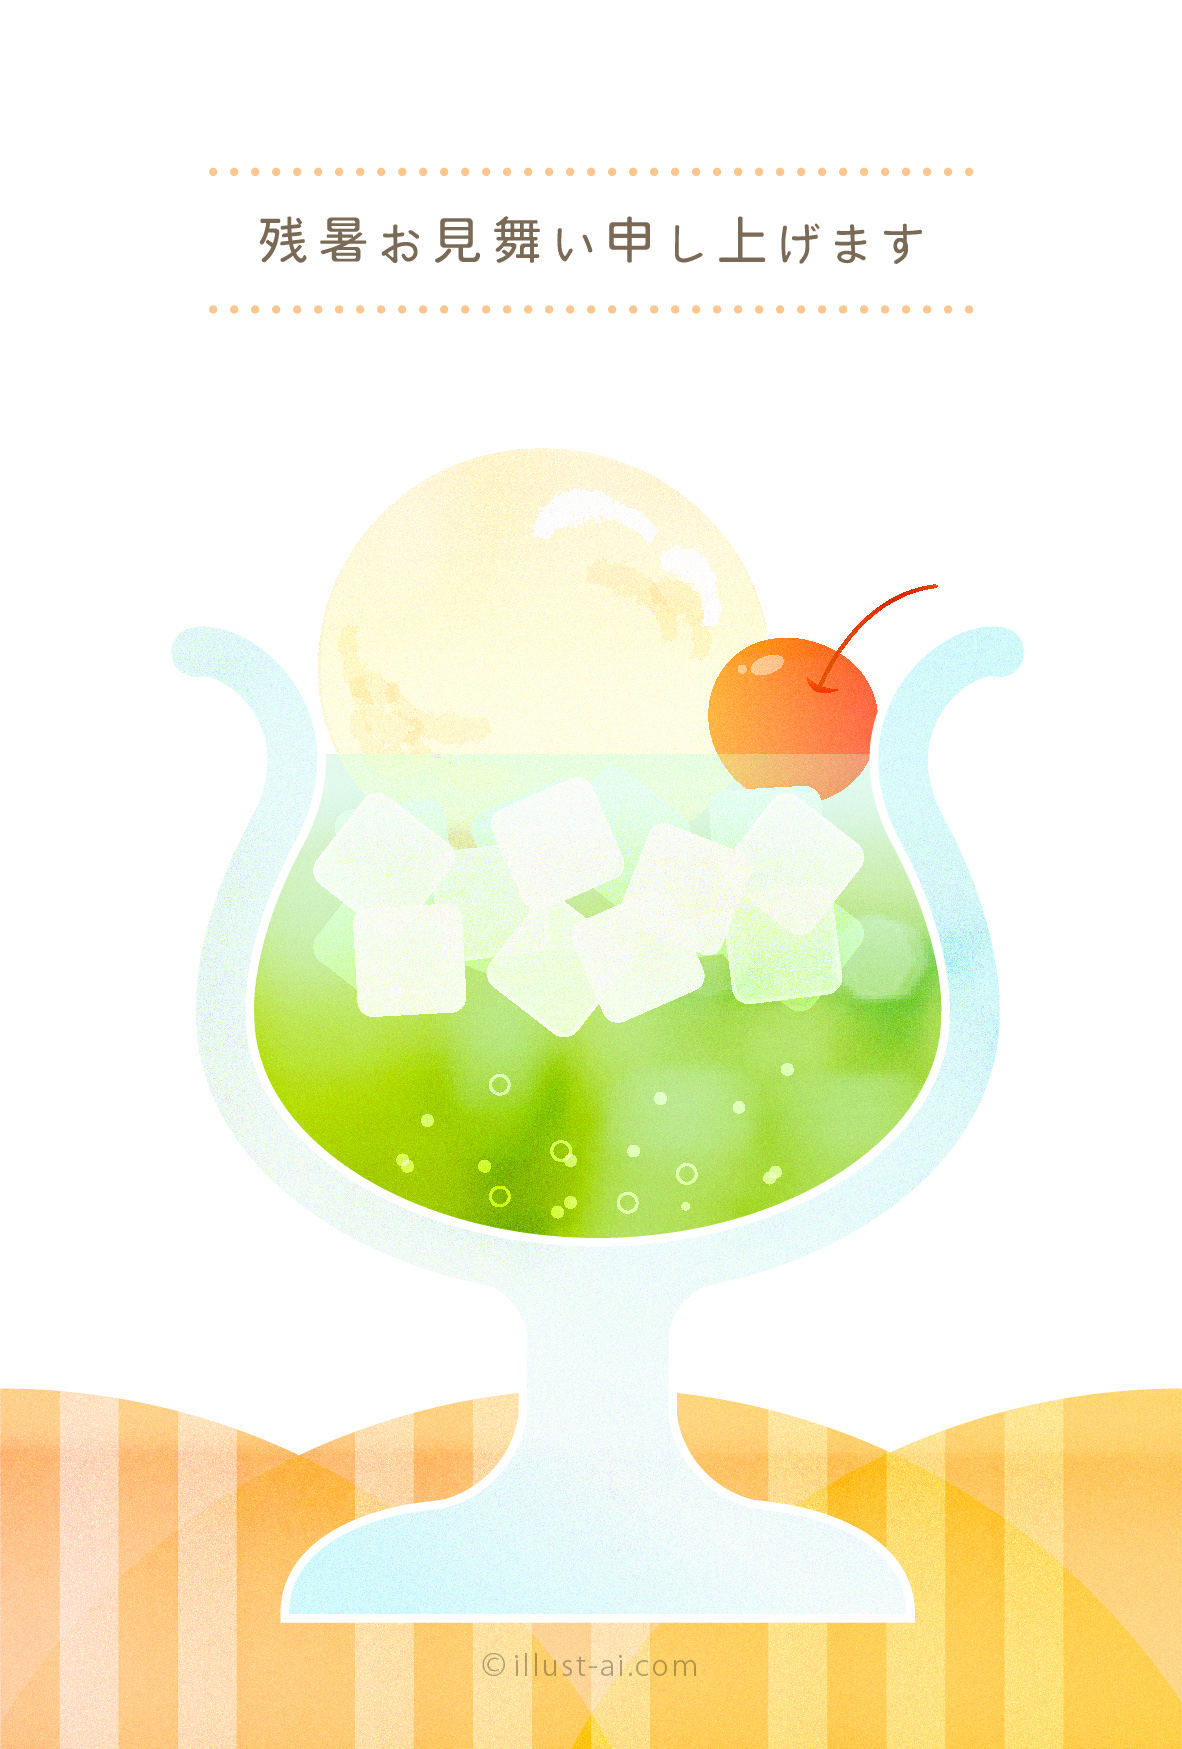 美味しそうなクリームソーダのイラスト 残暑お見舞い ポストカード イラスト素材サイト イラストareira Postcard Template